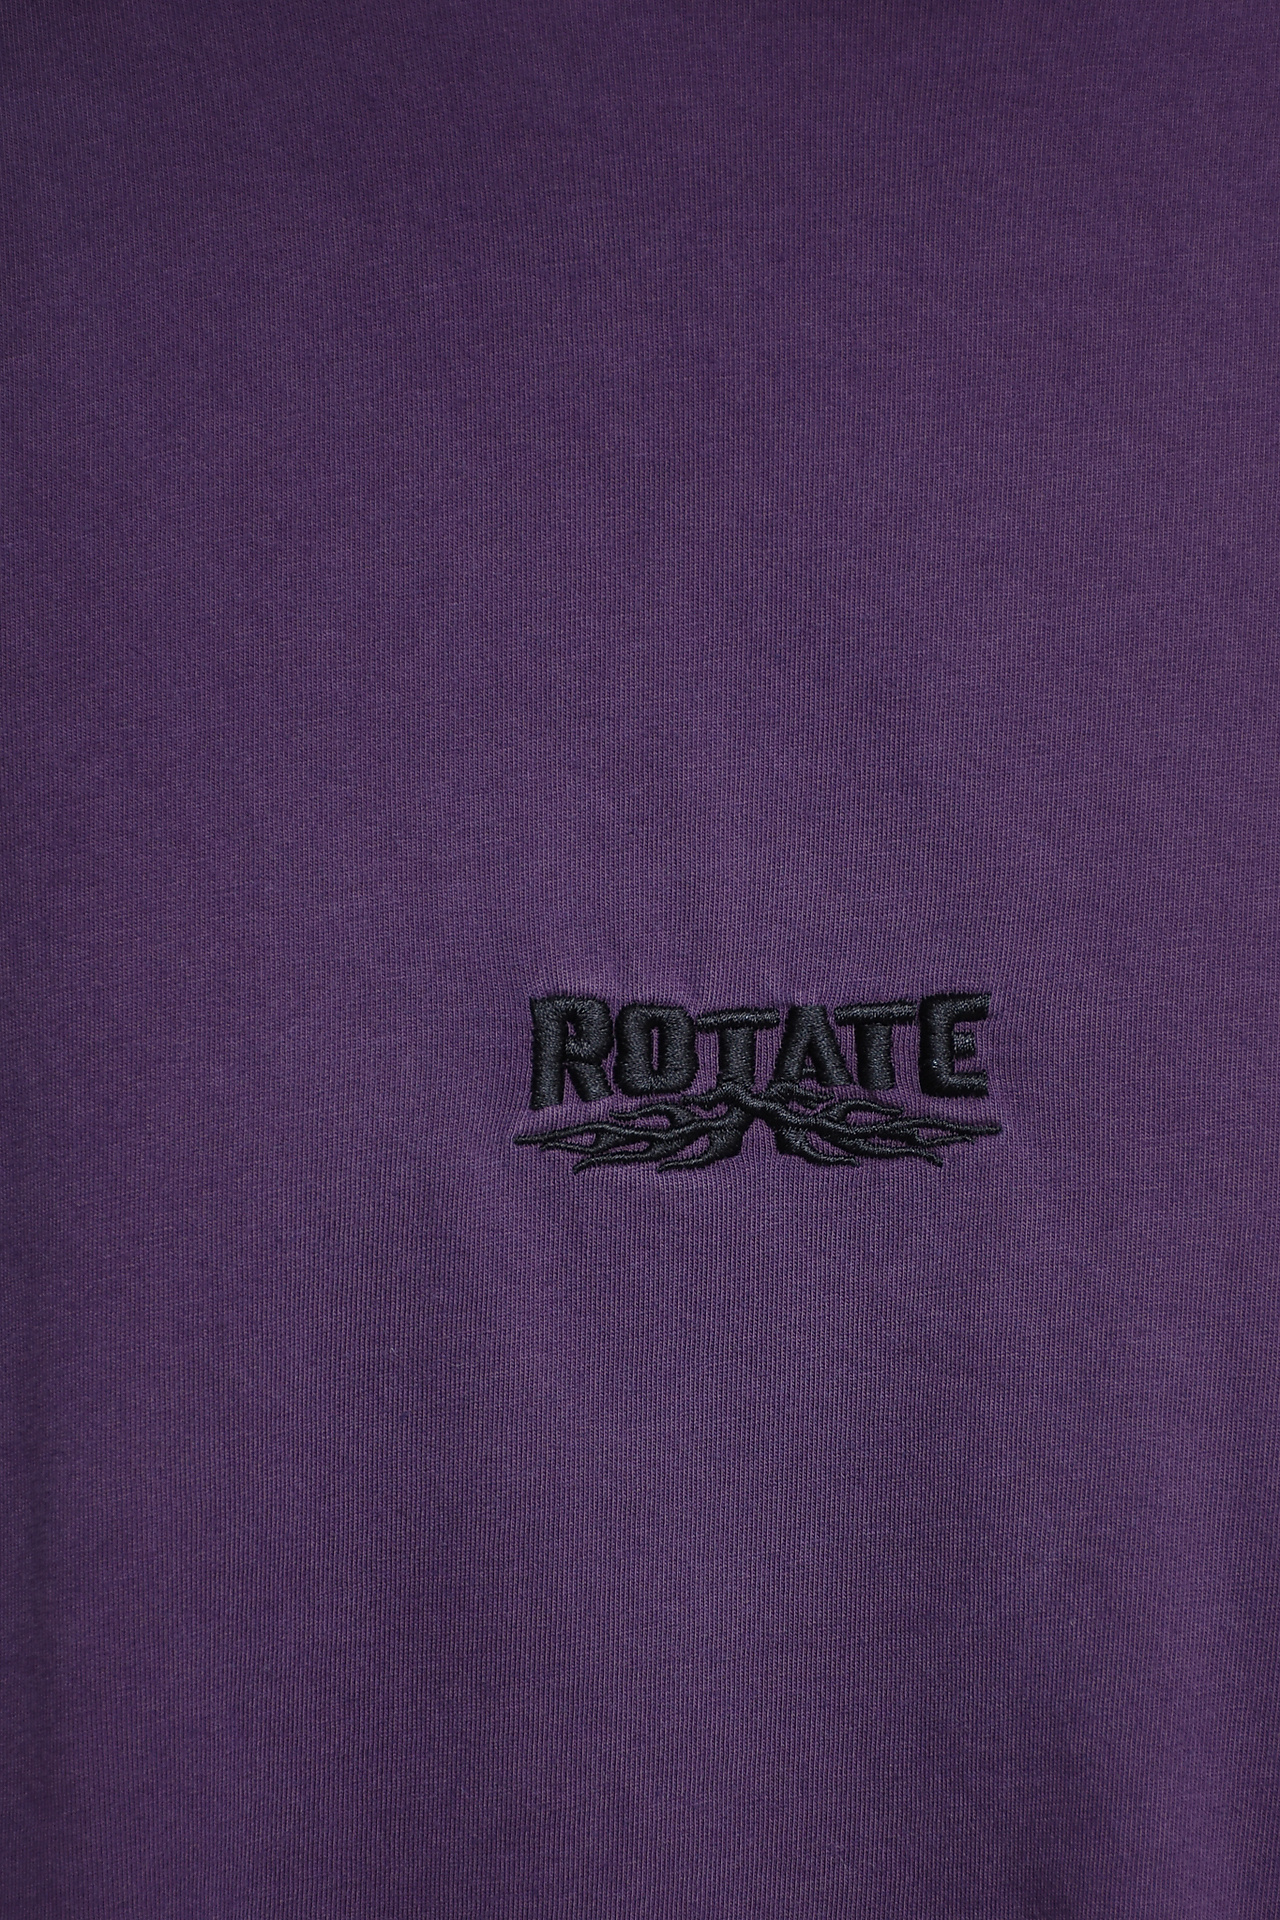 Rotate Tops Purple